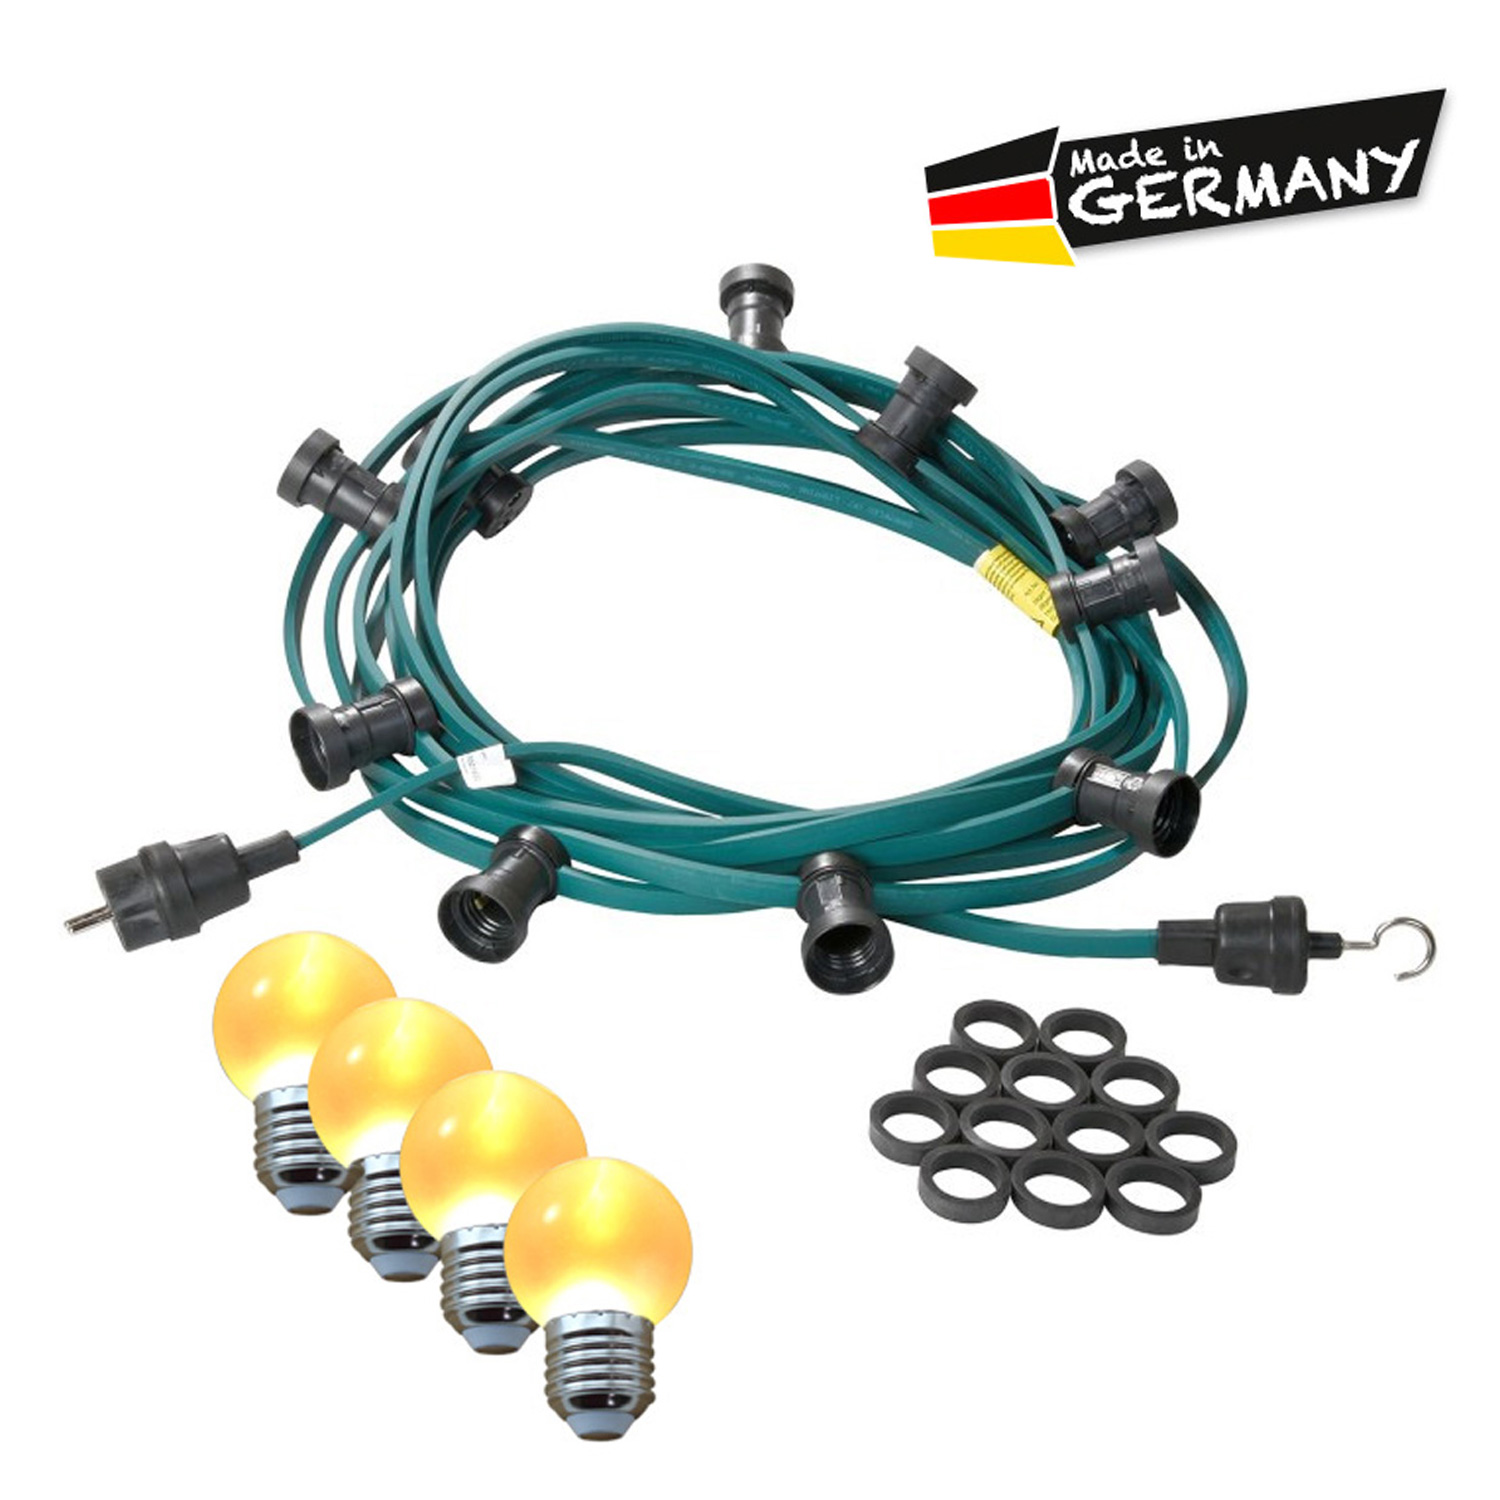 Illu-/Partylichterkette 10m | Außenlichterkette | Made in Germany | 30 x ultra-warmweisse LED Kugeln